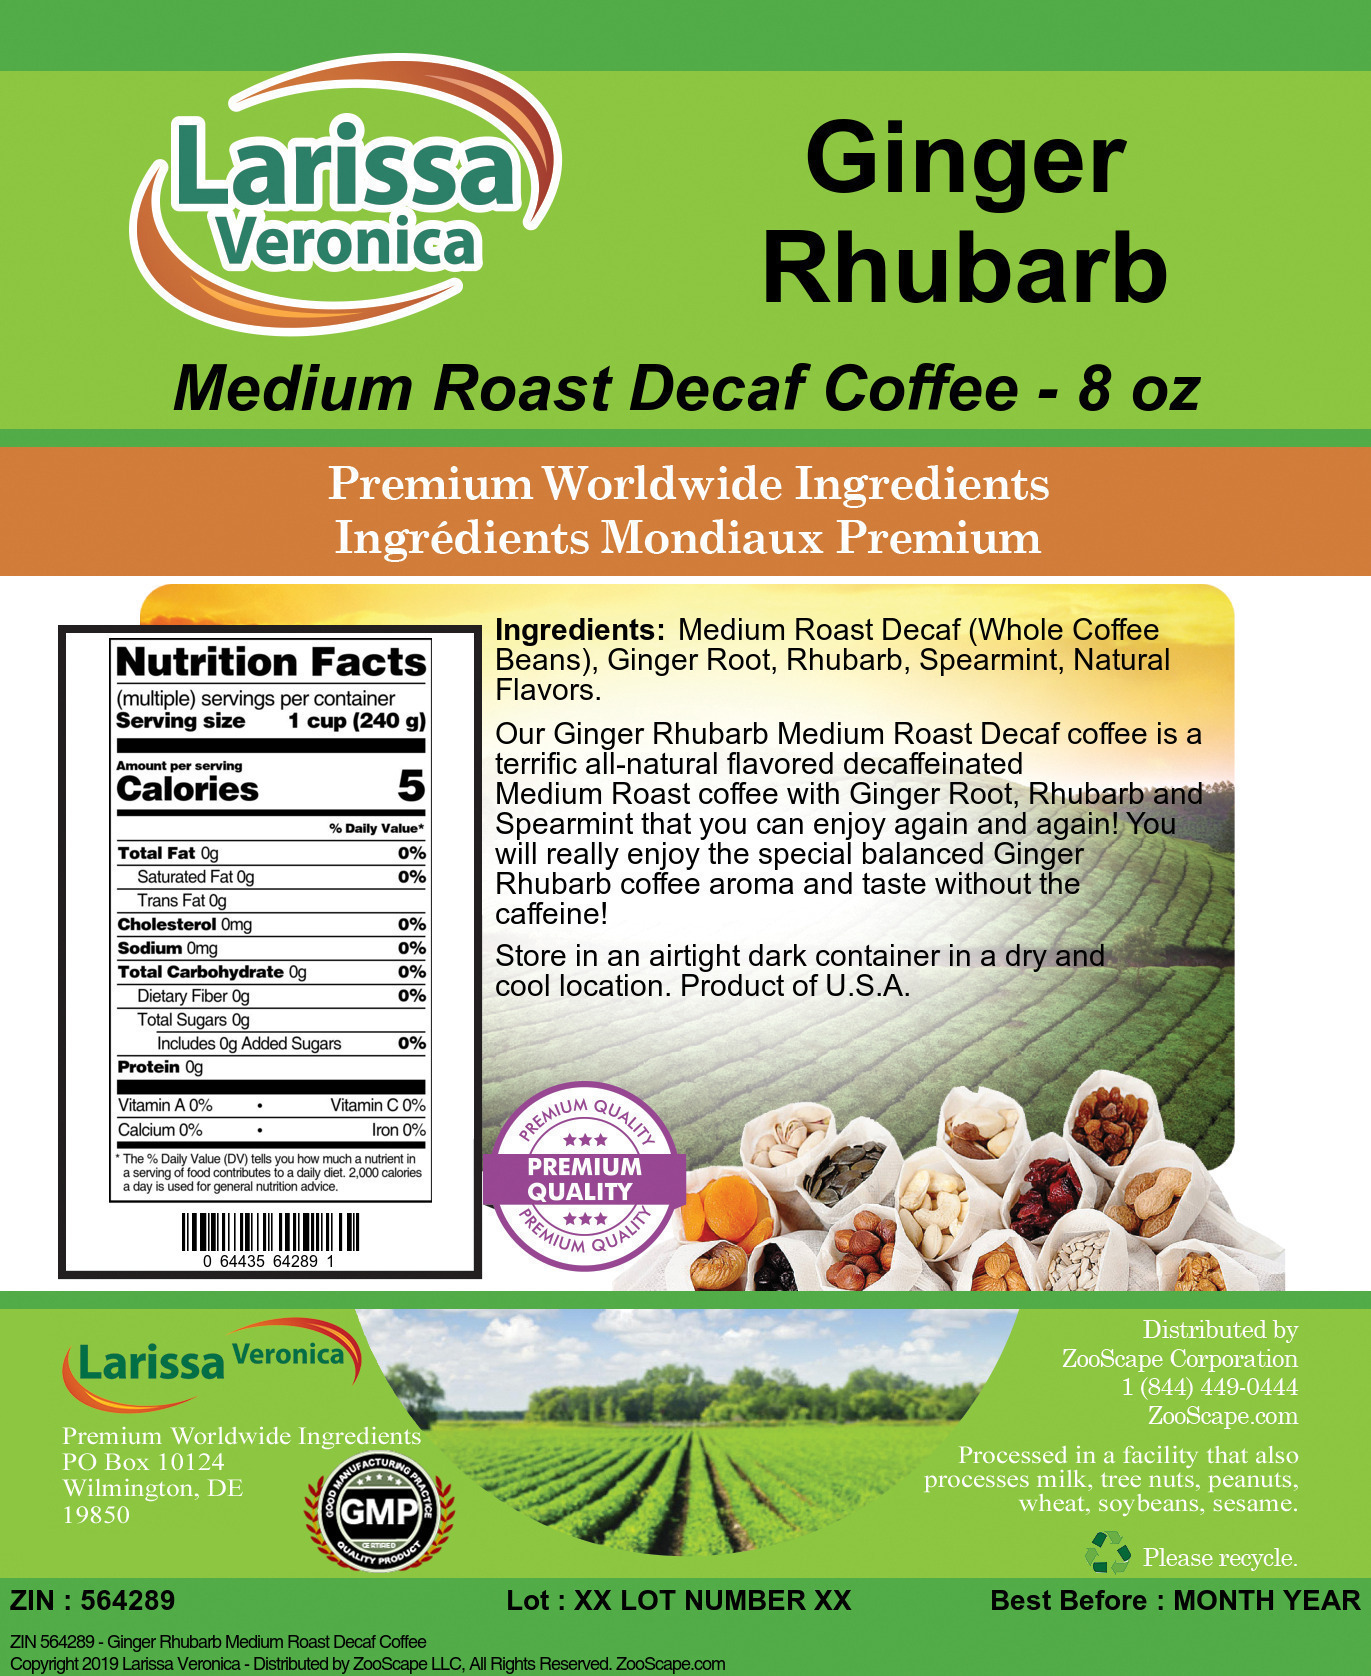 Ginger Rhubarb Medium Roast Decaf Coffee - Label